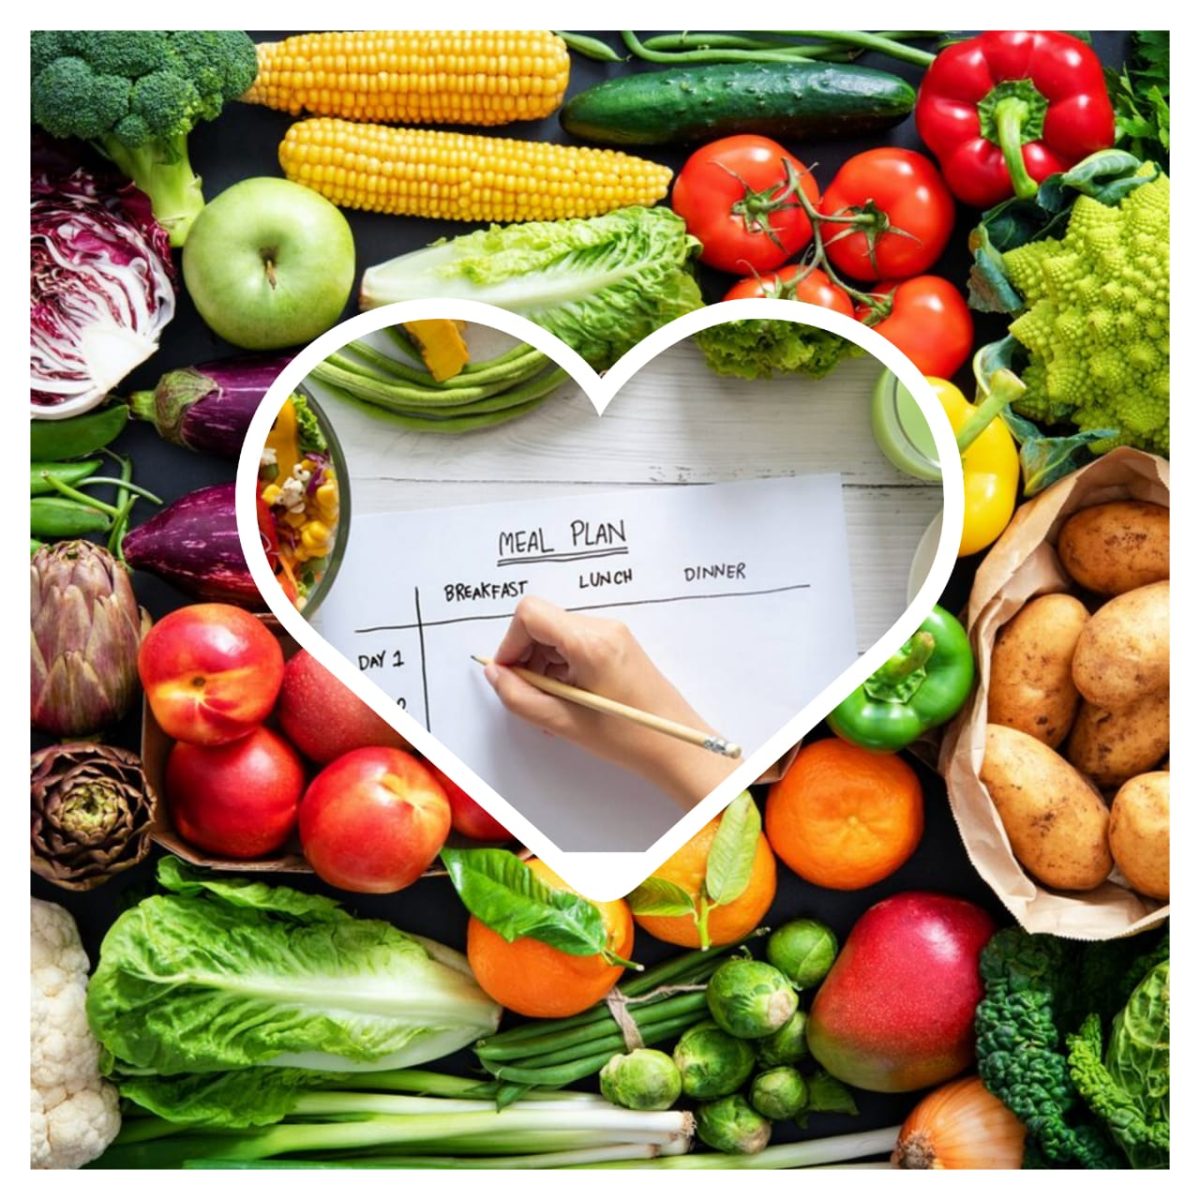 Vegetarian diet: कैंसर के खतरे को कम कर सकता है शाकाहार, वजन घटाने में भी करता है मदद